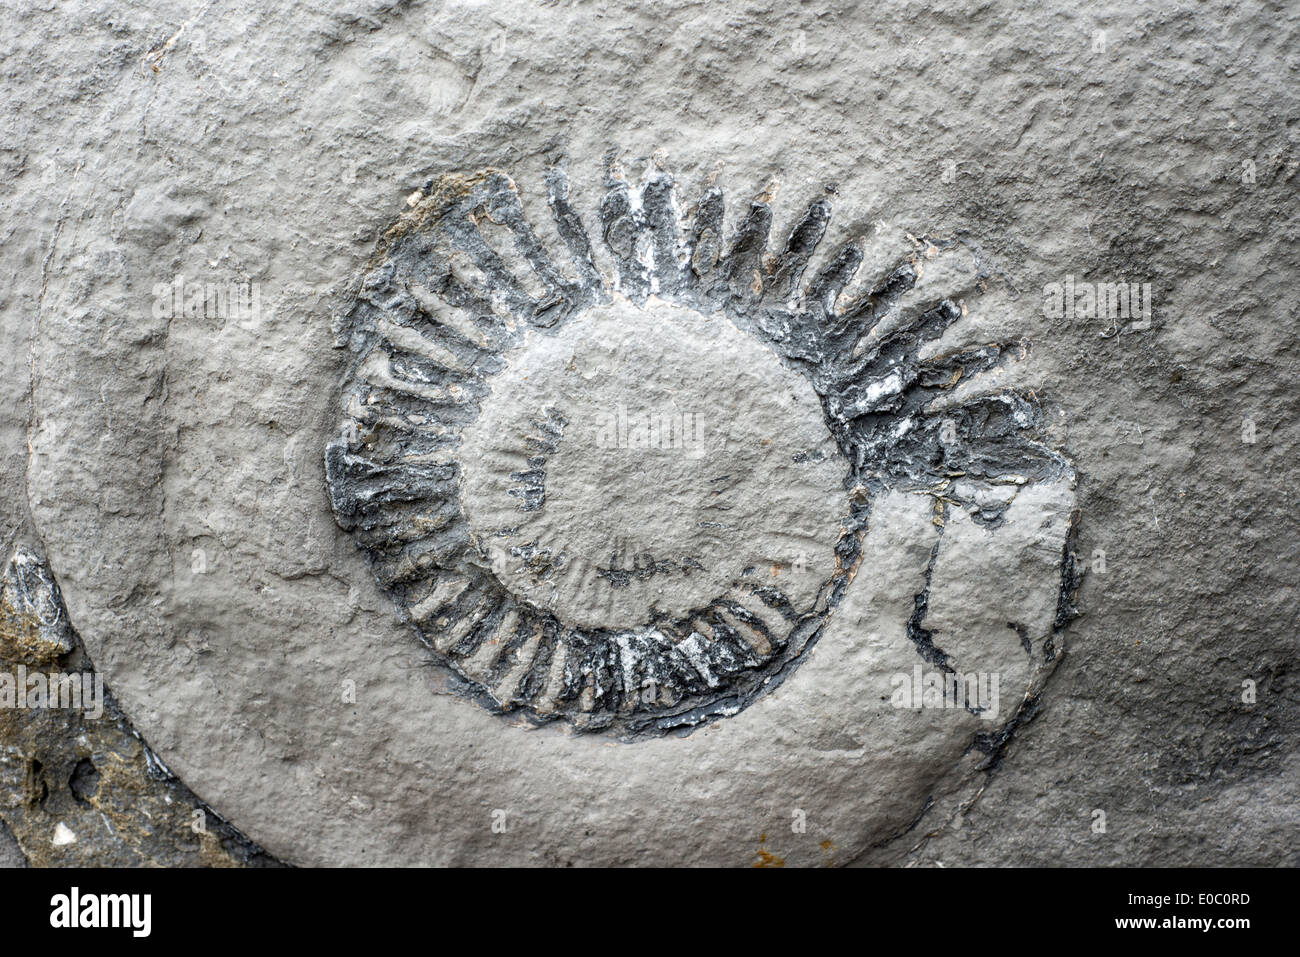 Ammonite fossile dans un rocher sur la plage de Lyme Regis, Dorset, England, UK Banque D'Images